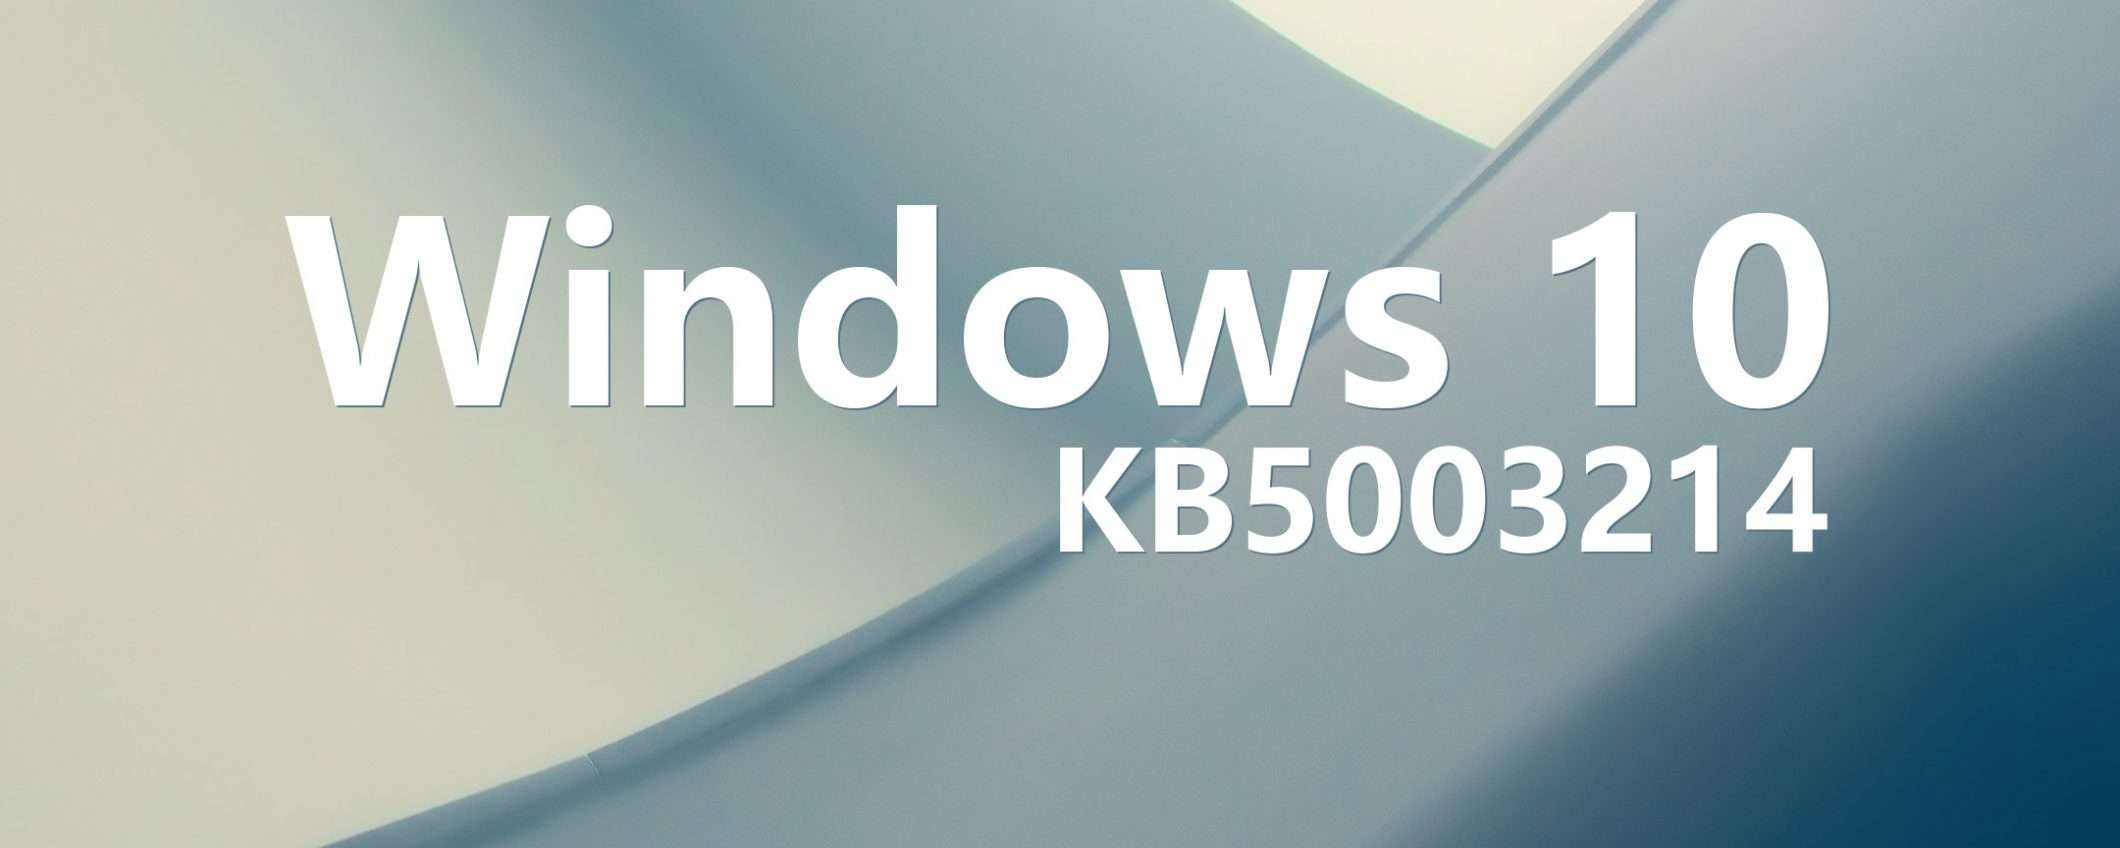 Windows 10: l'aggiornamento KB5003214 in download